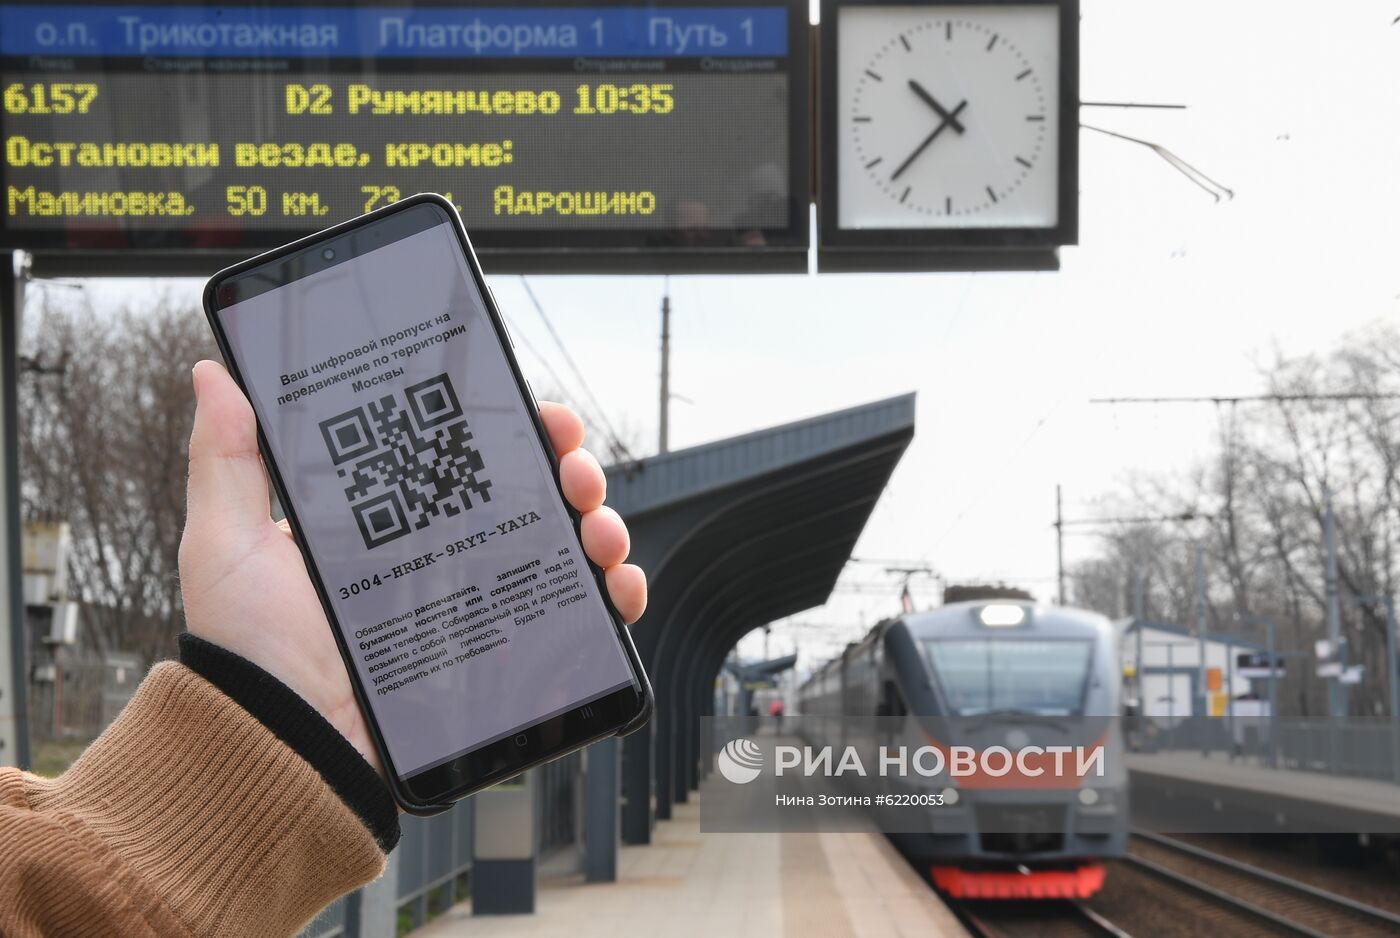 Оформление цифровых пропусков для передвижения по Москве доступно на сайте мэра 